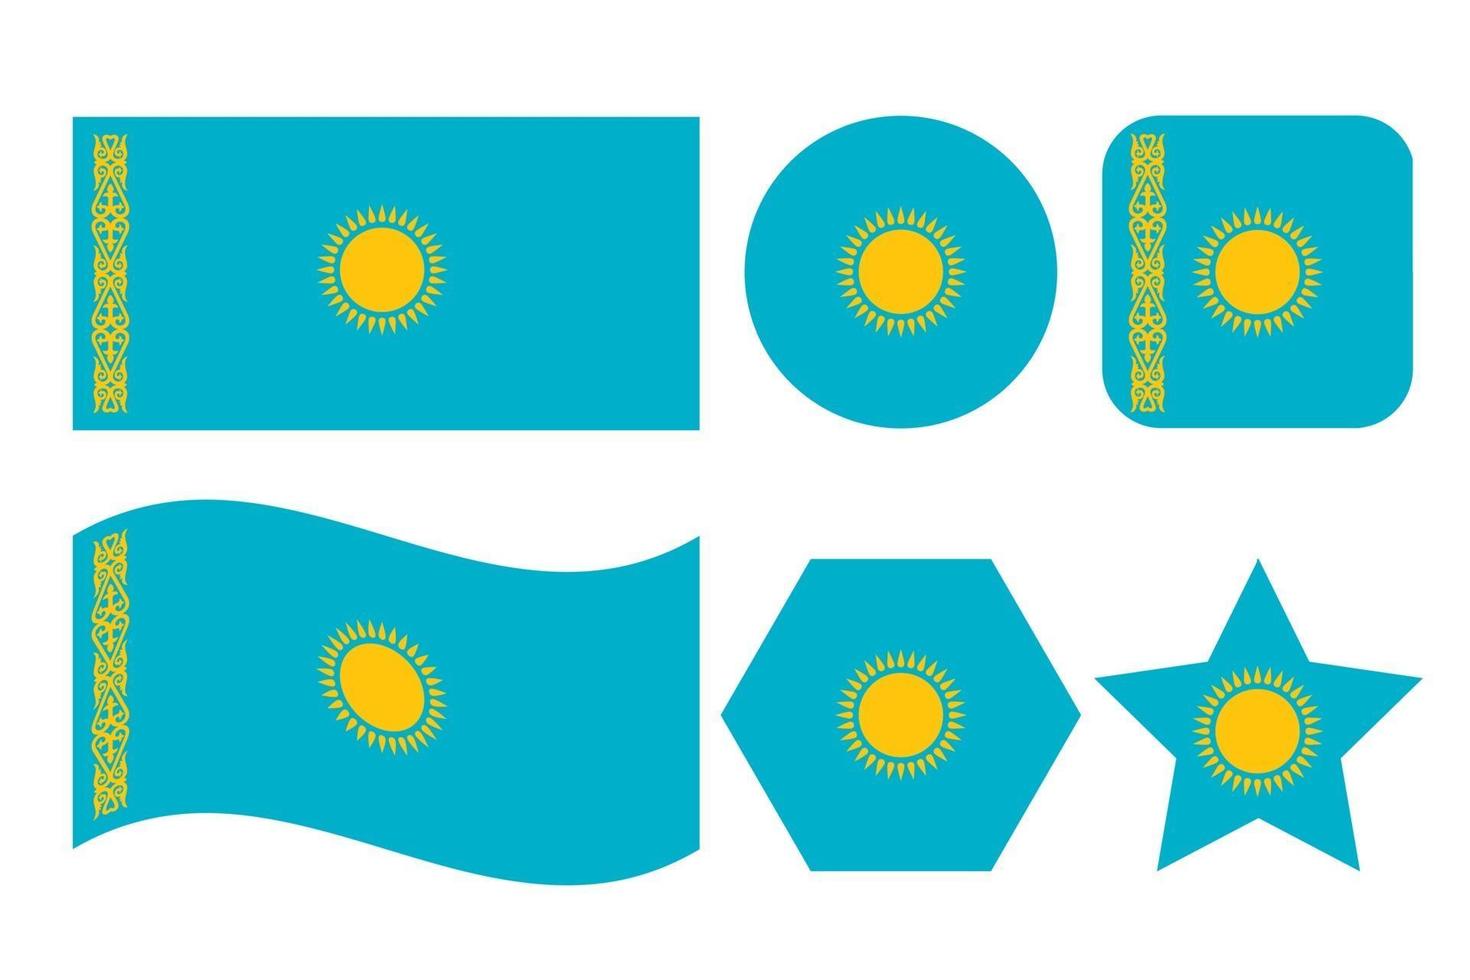 Kazakstan flagga enkel illustration för självständighetsdag eller val vektor